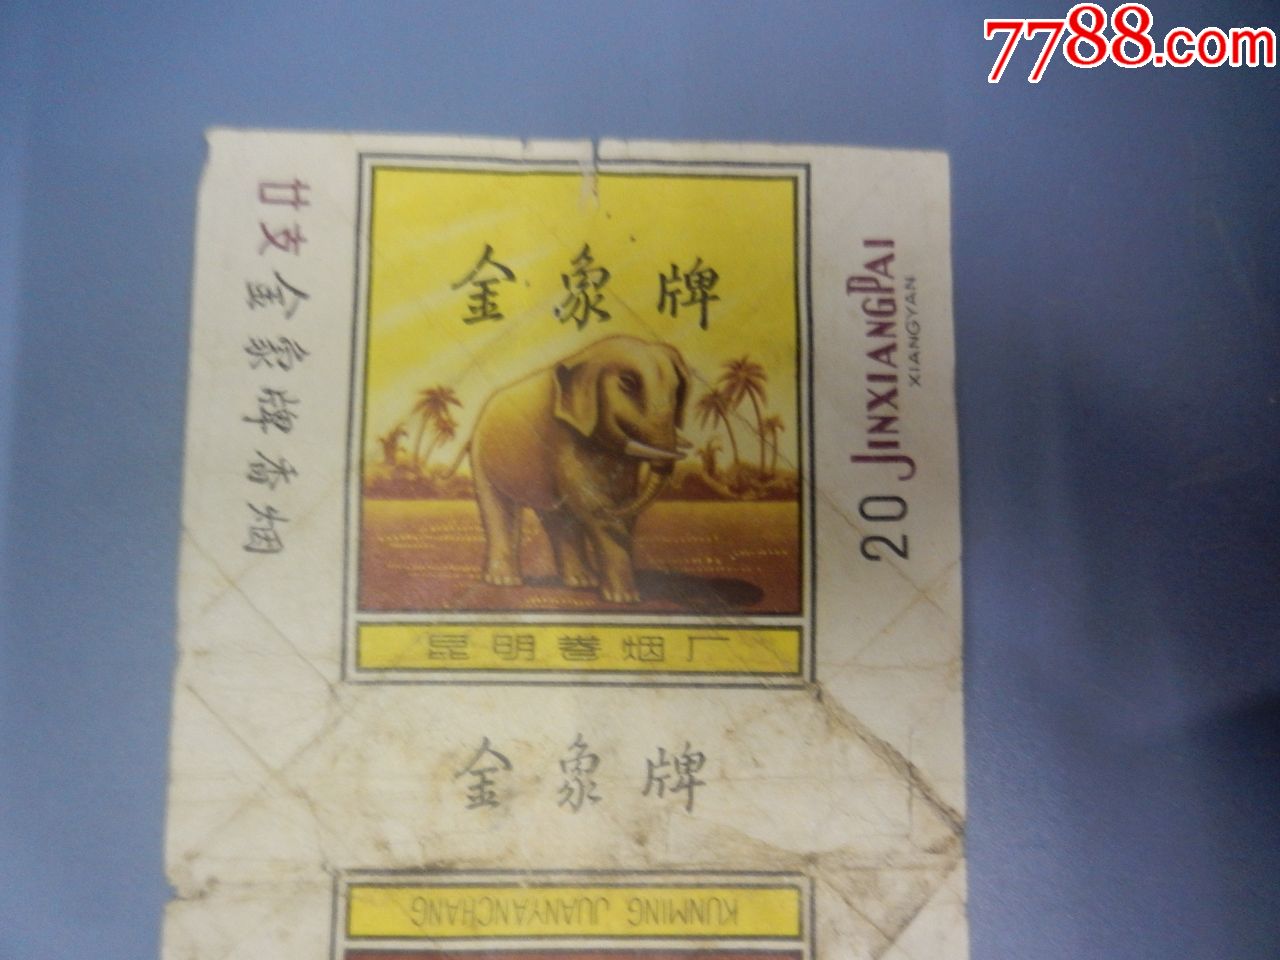 缅甸金象香烟图片